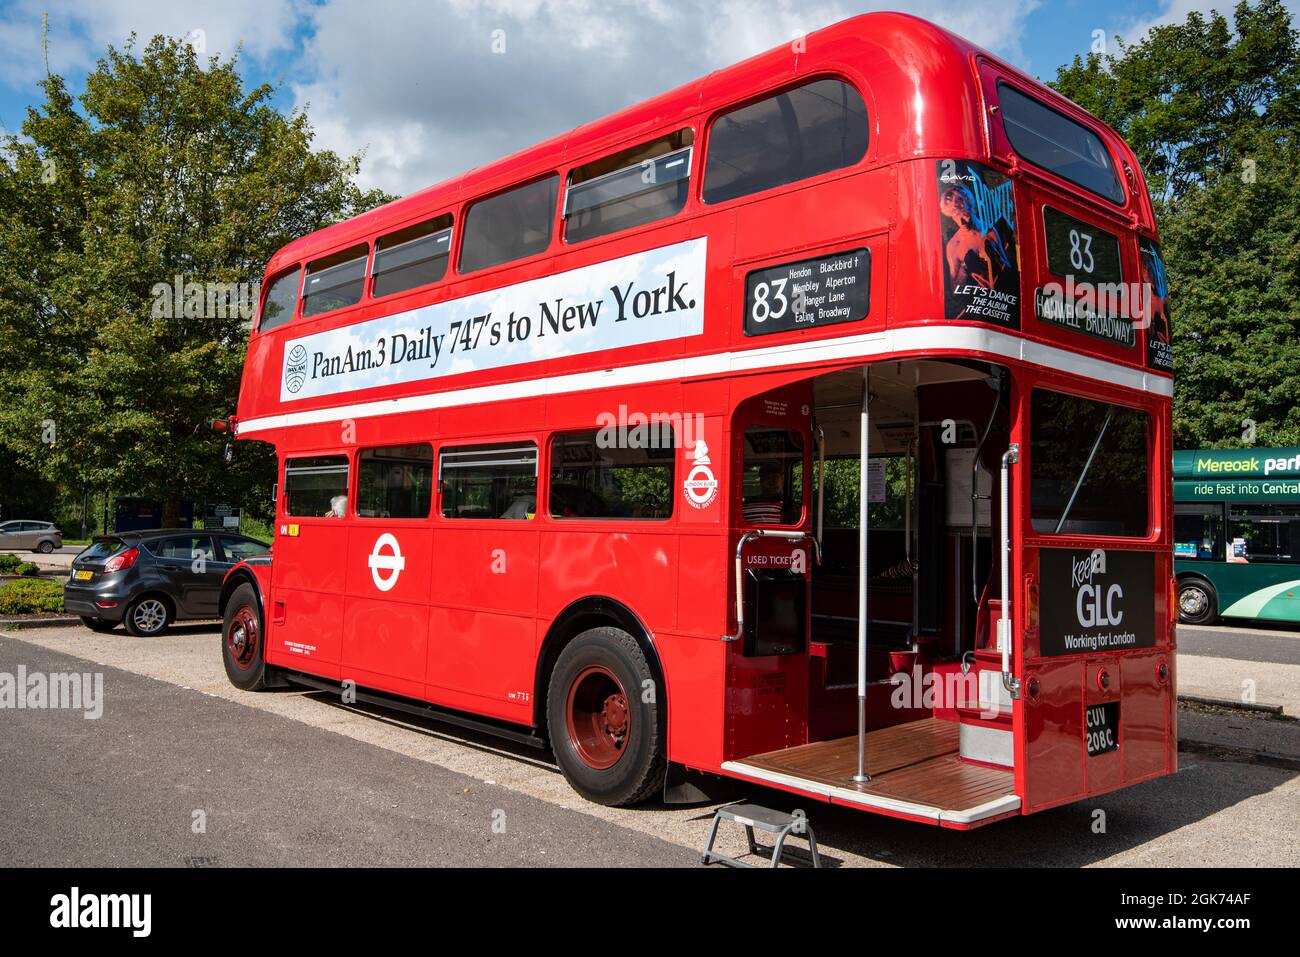 Un bus londonien classique à impériale rouge avec une publicité vintage pour les vols Pan Am à destination de New York sur 747s à côté, Winchester, Royaume-Uni Banque D'Images